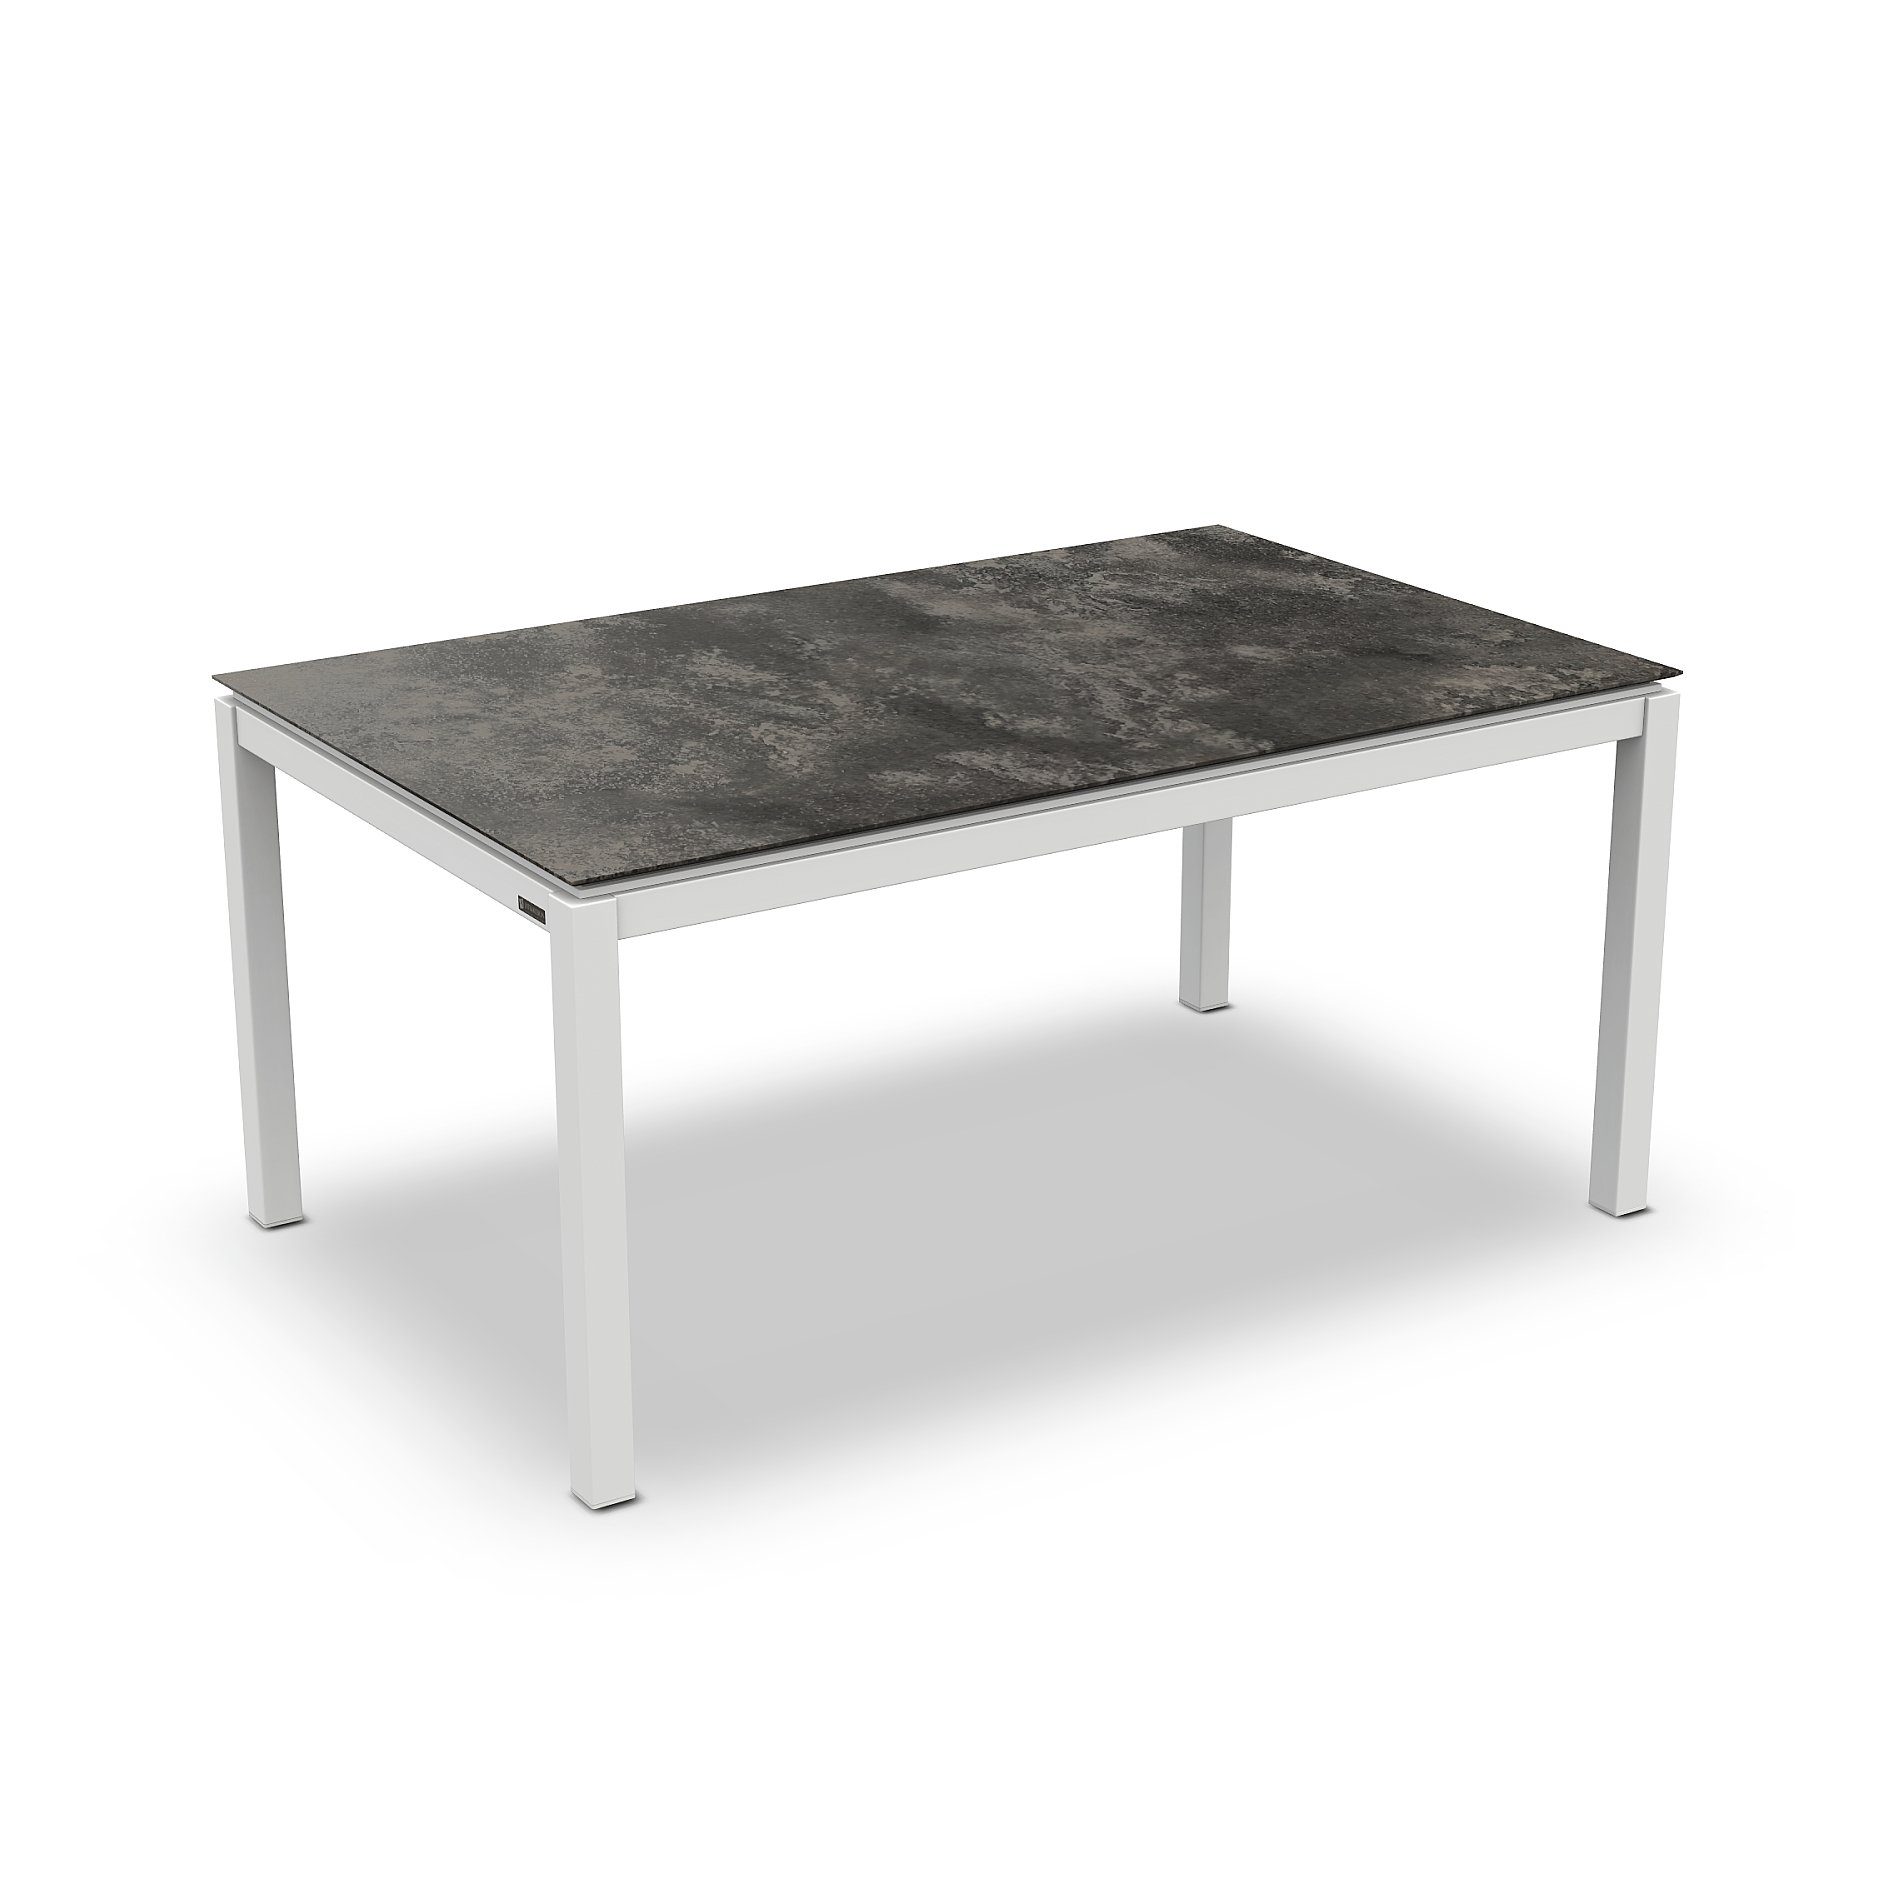 Jati&Kebon Gartentisch “Lugo“, Gestell Aluminium weiß, Tischplatte HPL Granit dunkelgrau, 160x90 cm